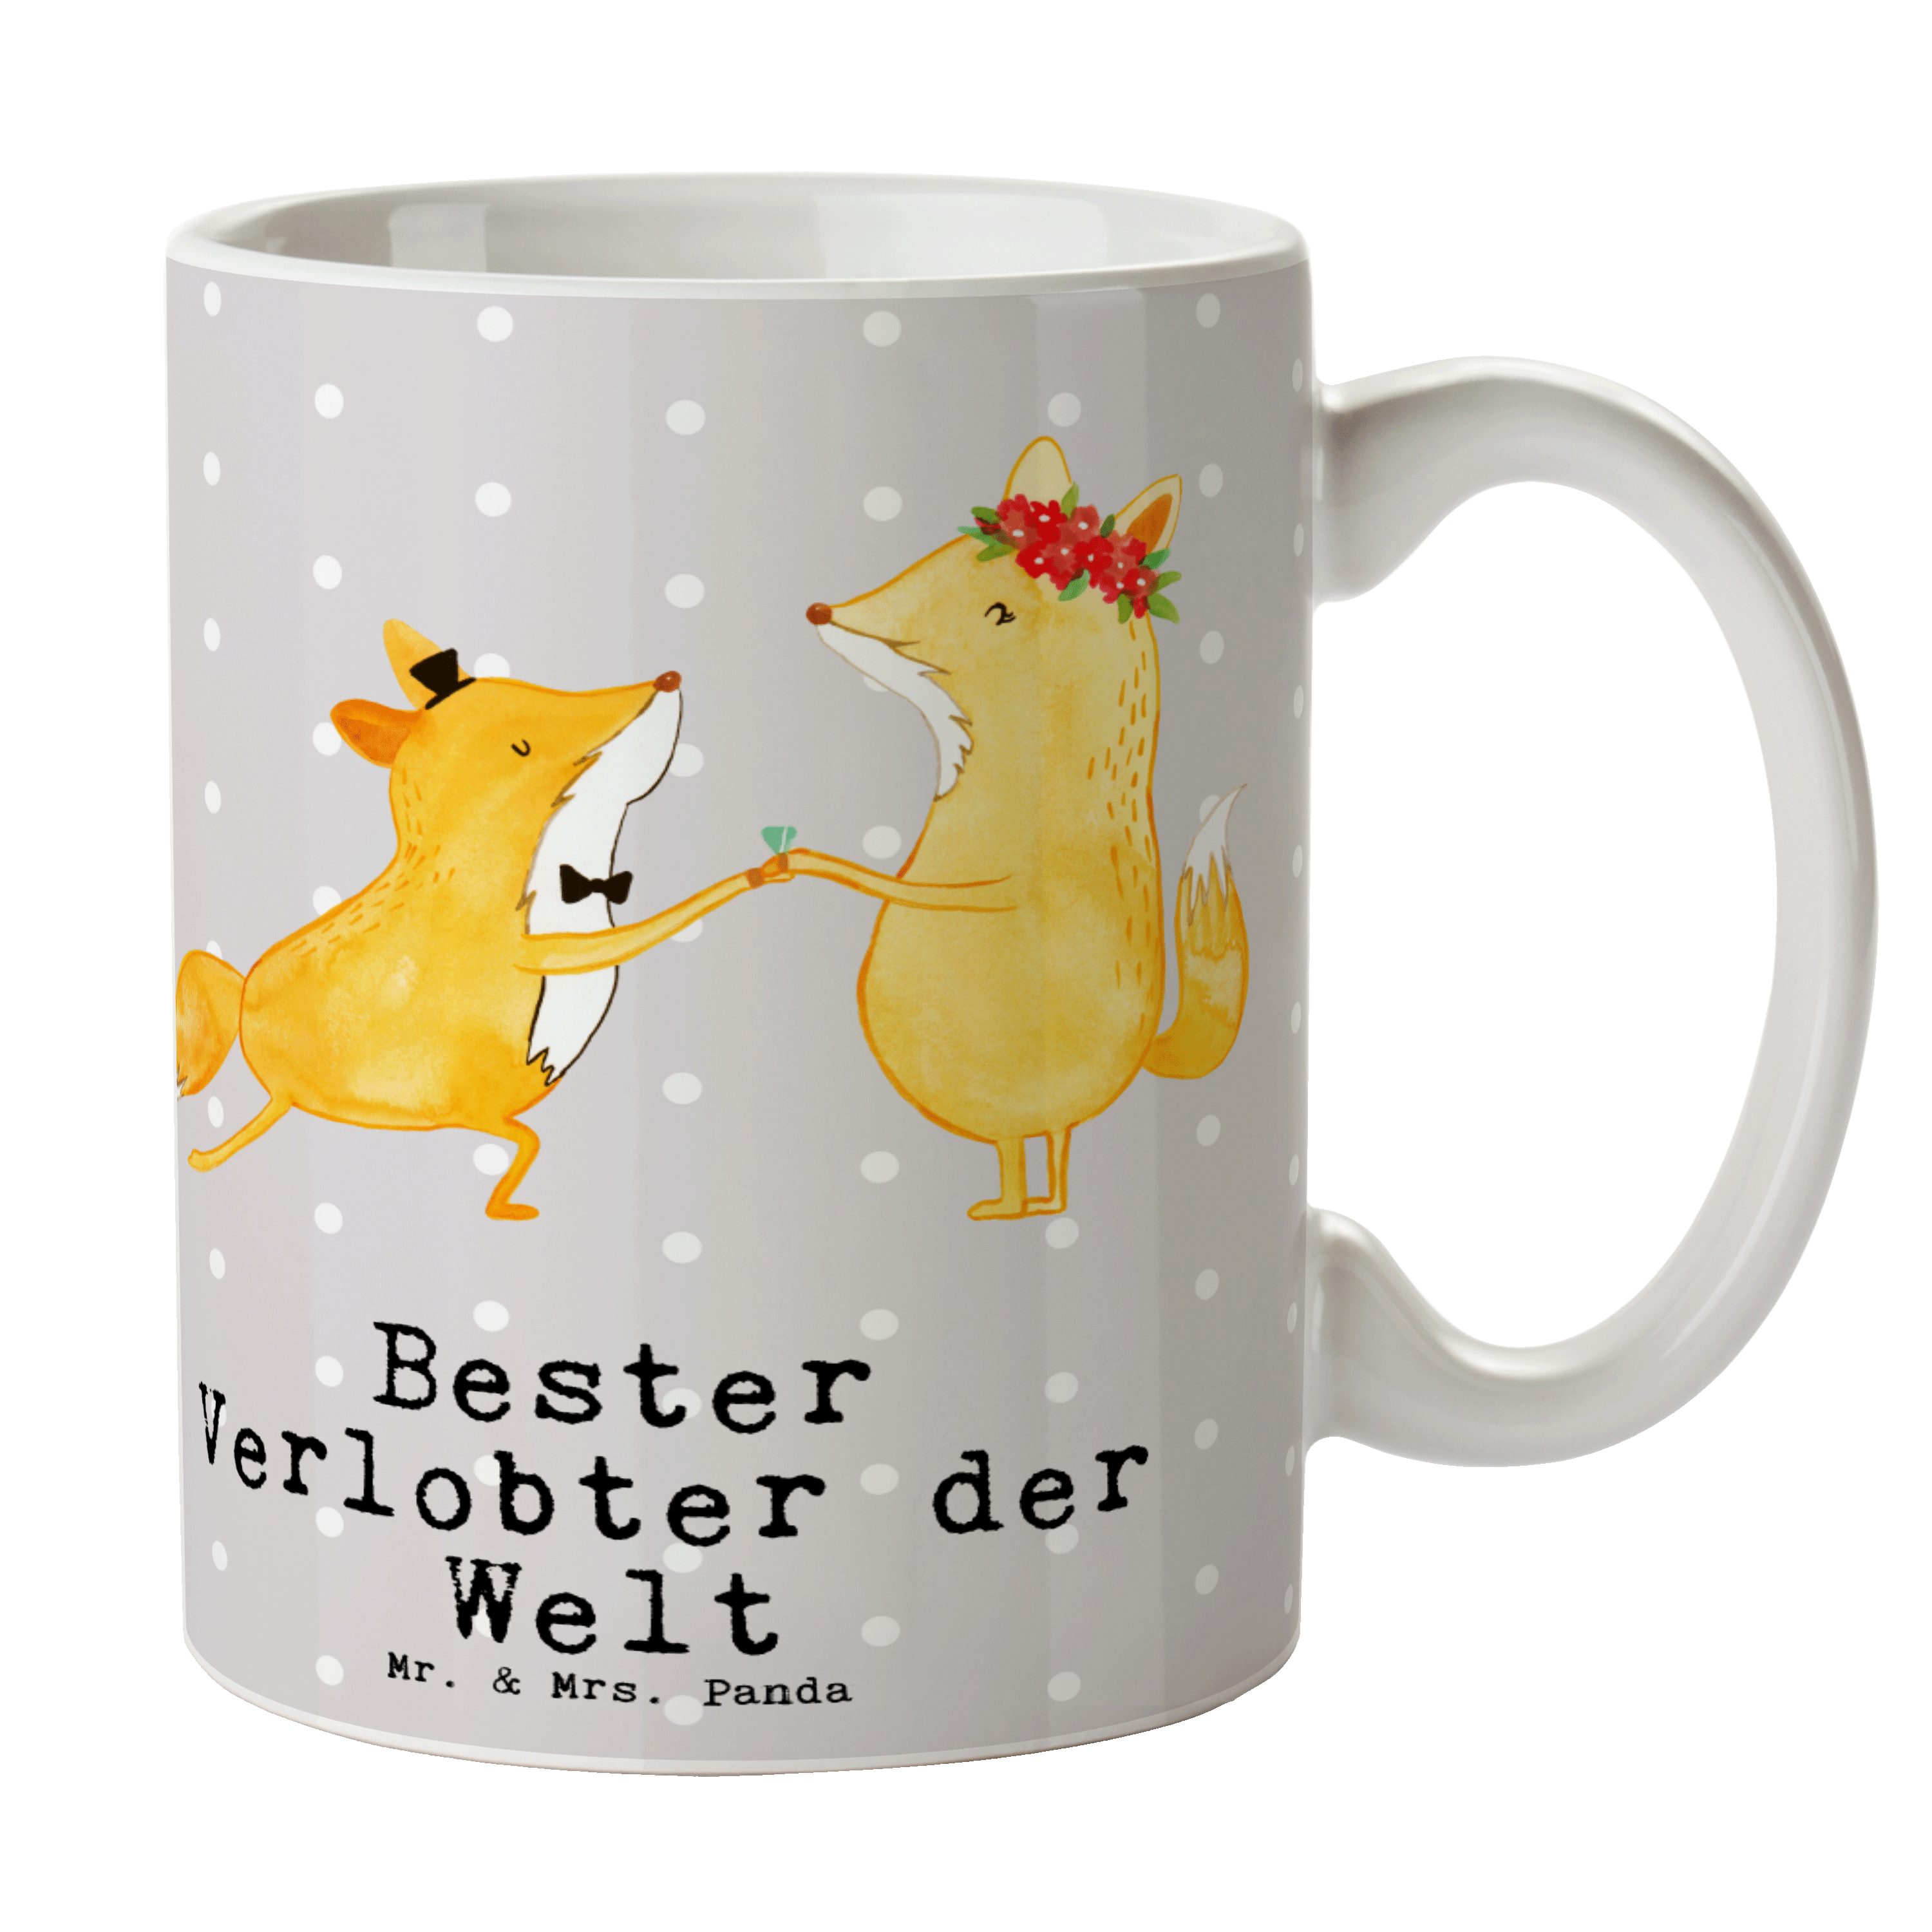 Mr. & Mrs. Panda Tasse Fuchs Bester Verlobter der Welt - Grau Pastell - Geschenk, Geburtstag, Keramik